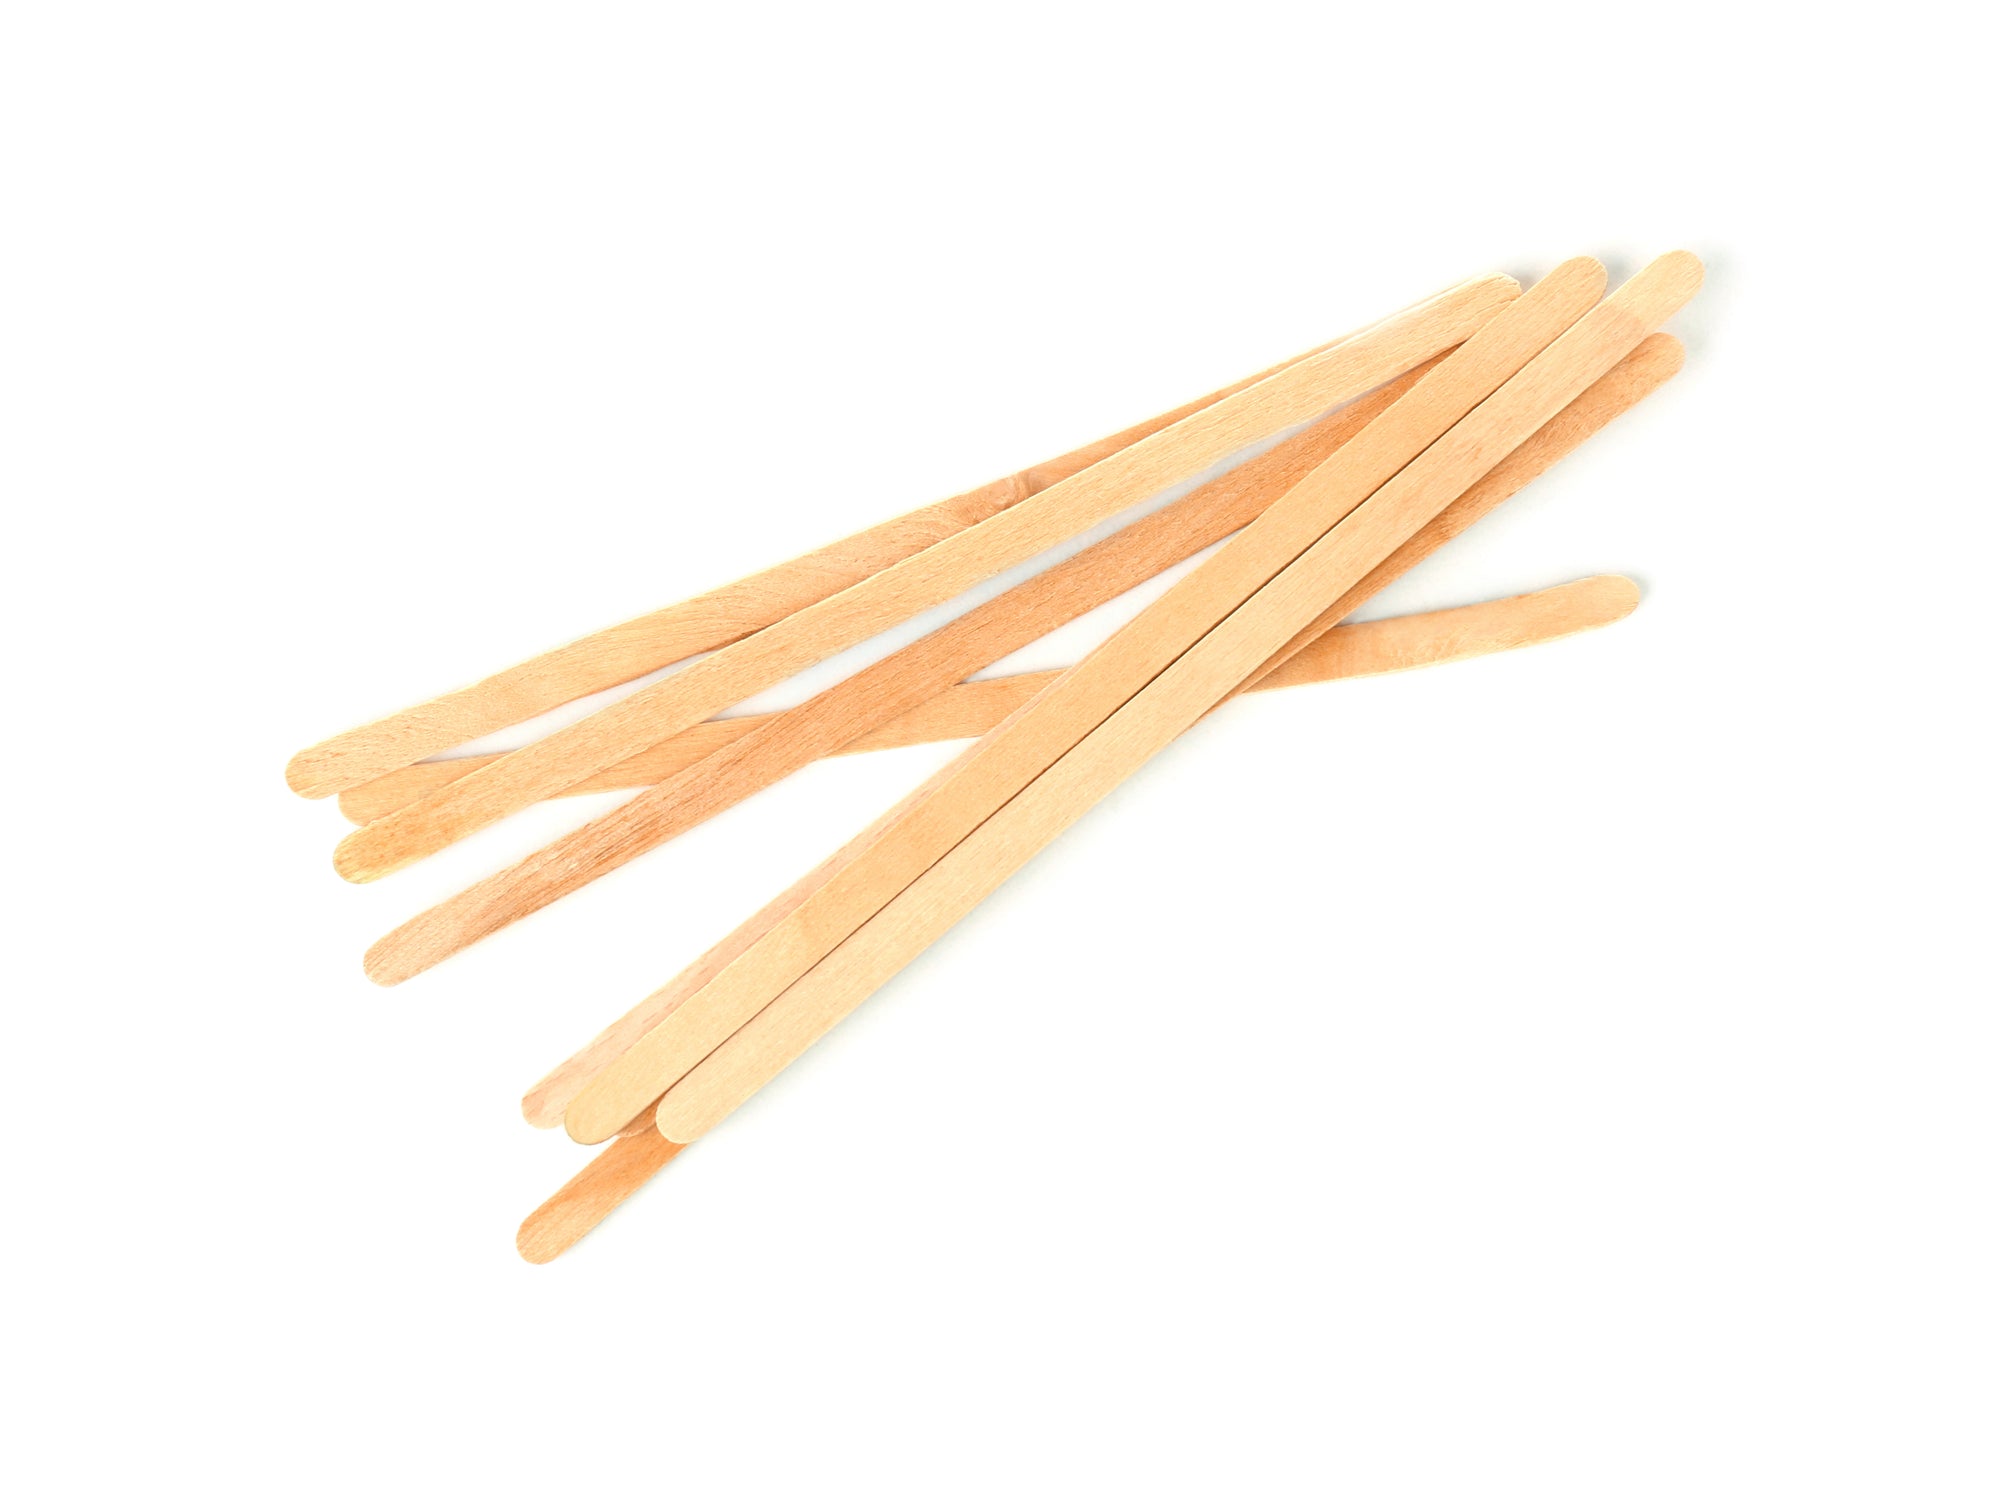 Waxing Sticks - Small 1,000 pcs – Relax N Wax